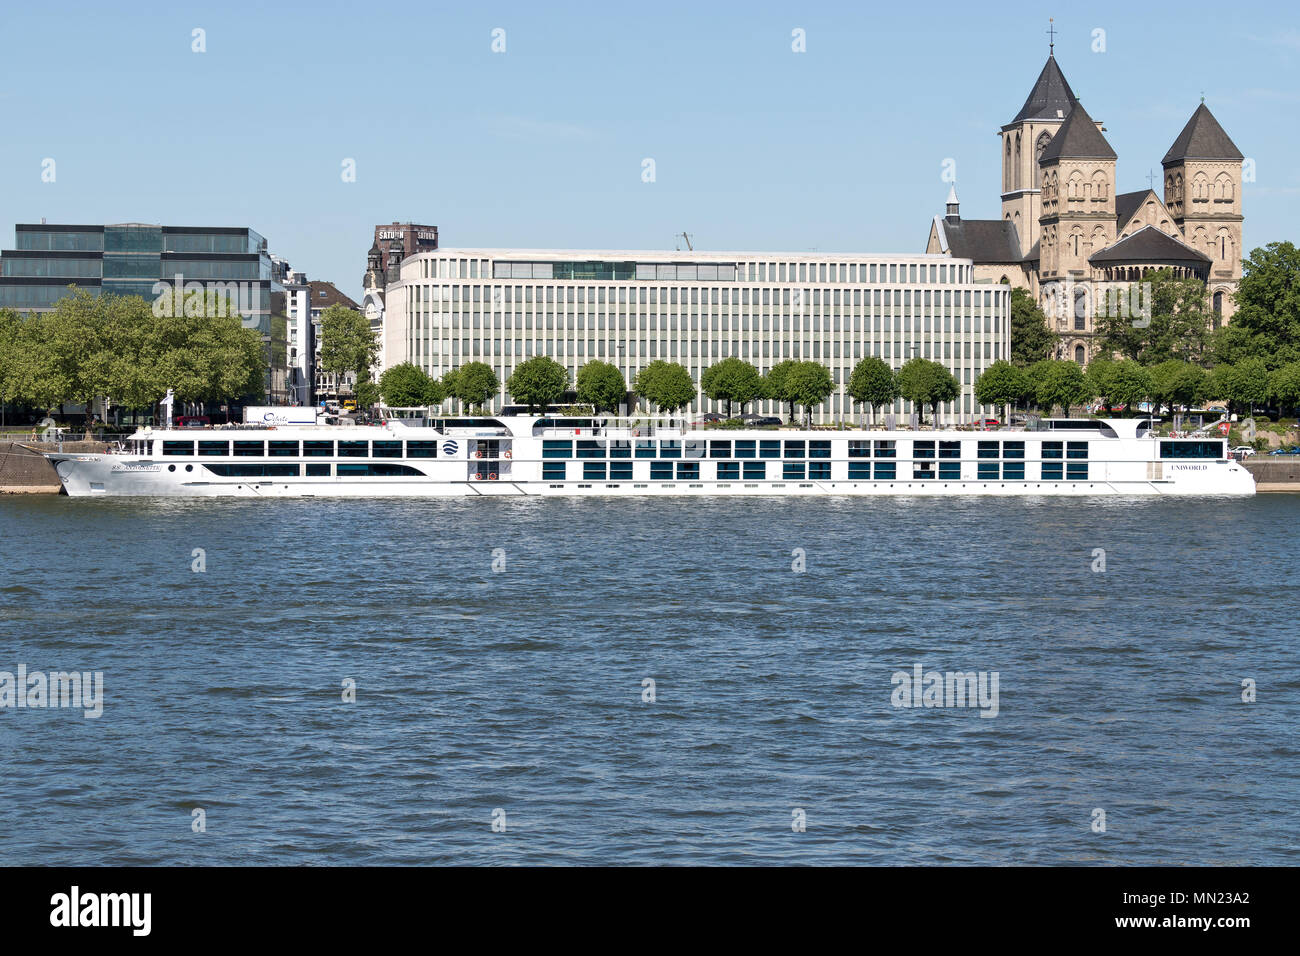 River Cruise Ship ANTOINETTE in Köln, Deutschland. Uniworld betreibt eine Flotte von 21 Schiffen entlang der Flüsse Europas, Russland, Ägypten und China. Stockfoto